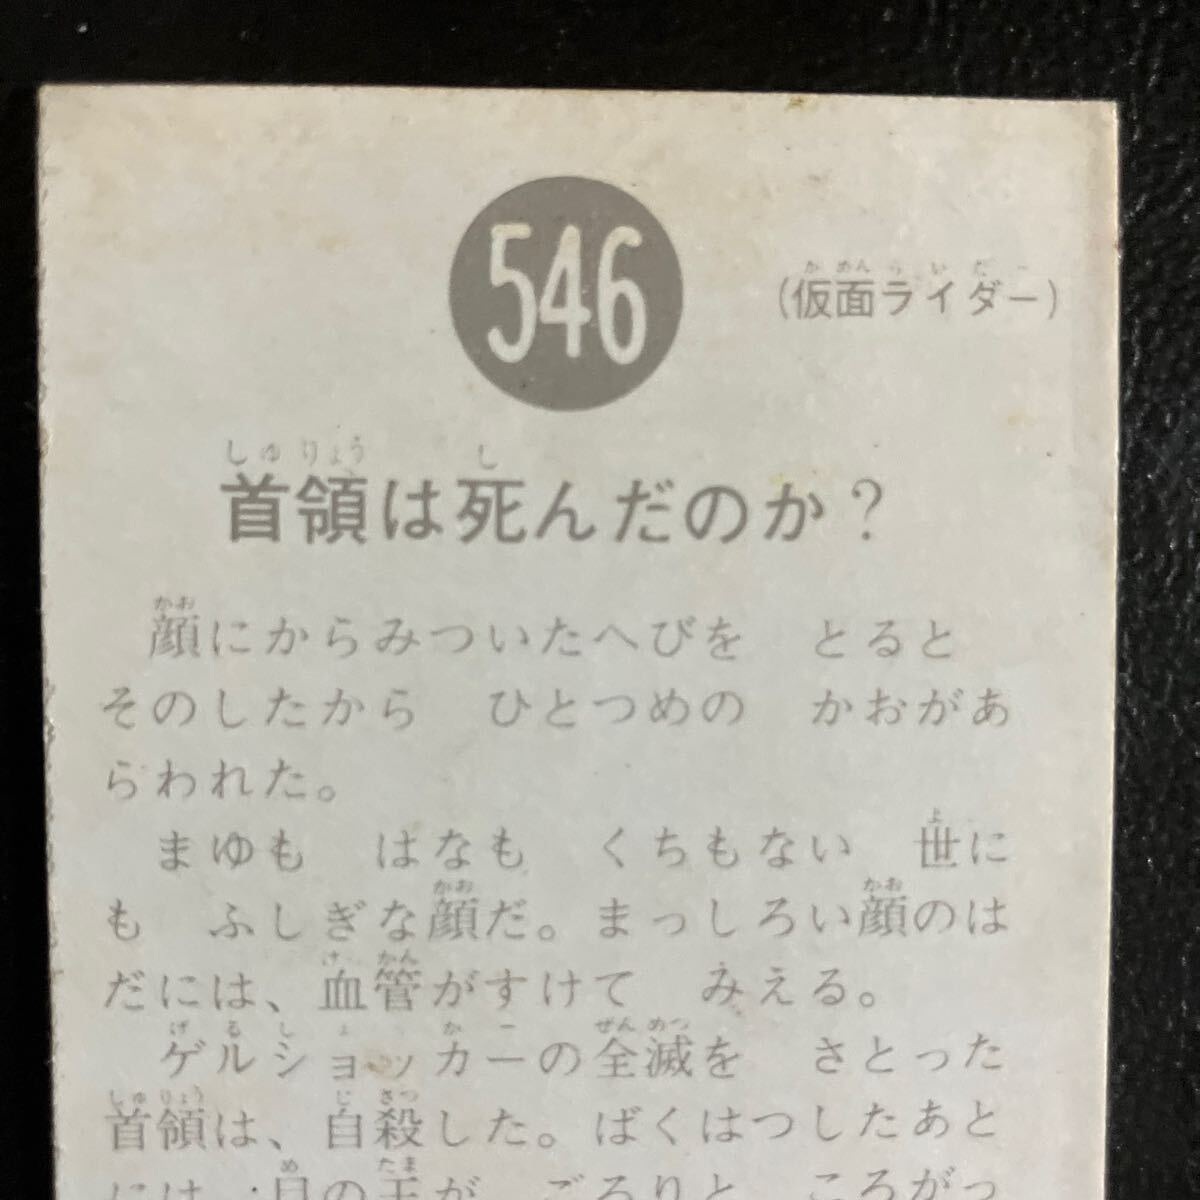 旧カルビー 仮面ライダーカード 546番SR21当時物 カルビー製菓 昭和　仮面ライダー_画像4